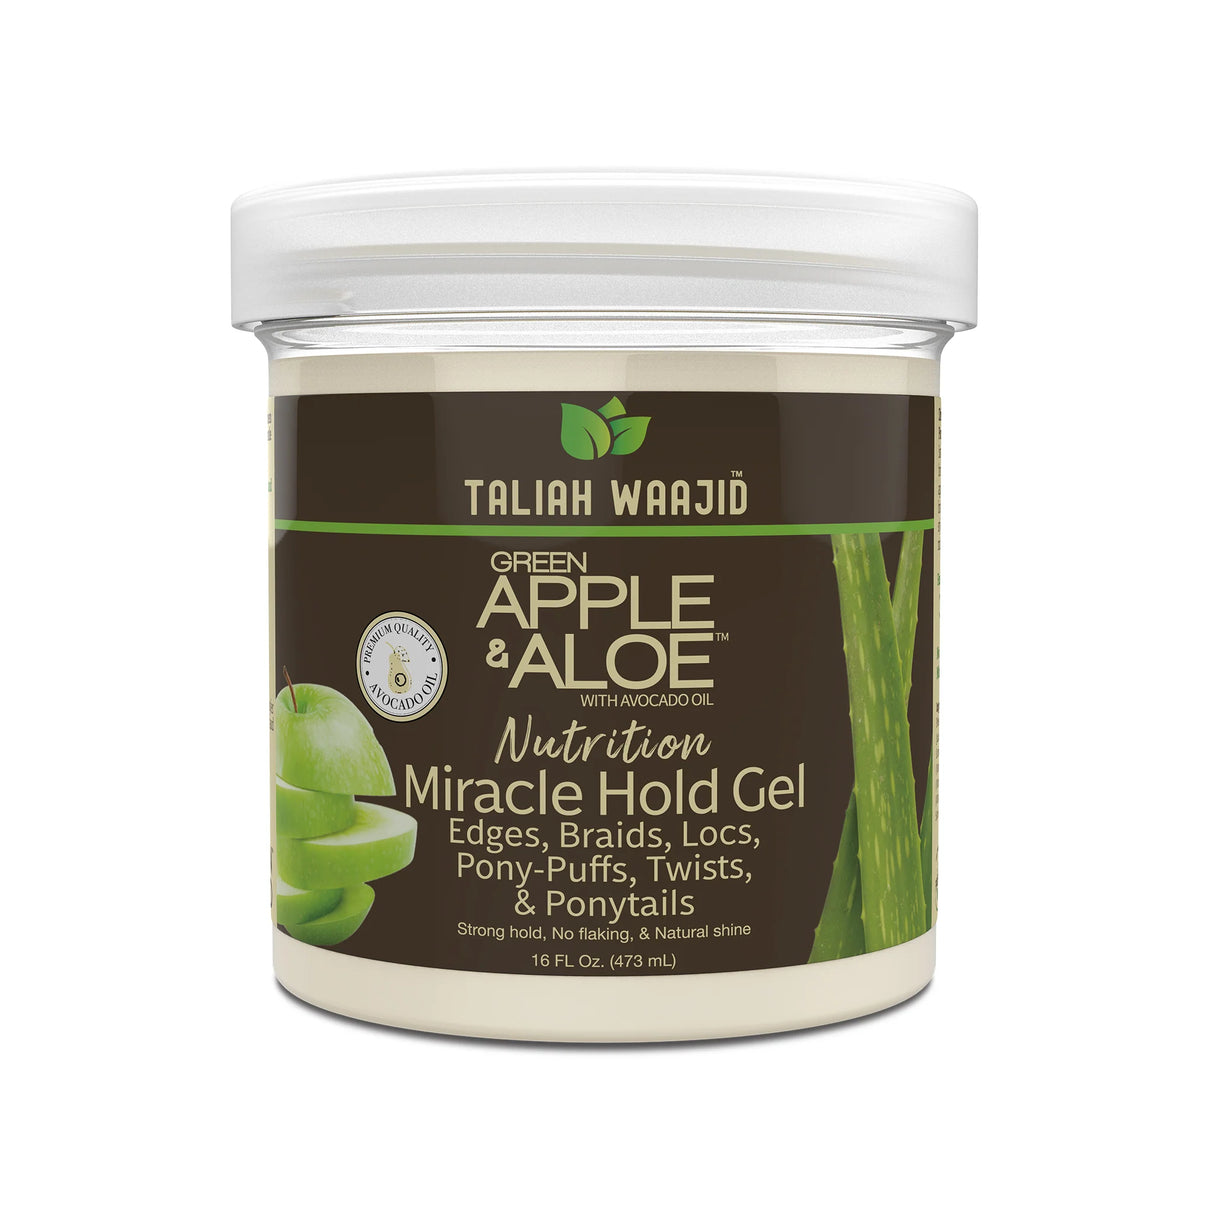 Taliah Waajid™ Green Apple & Aloe Nutrition Miracle Hold Gel